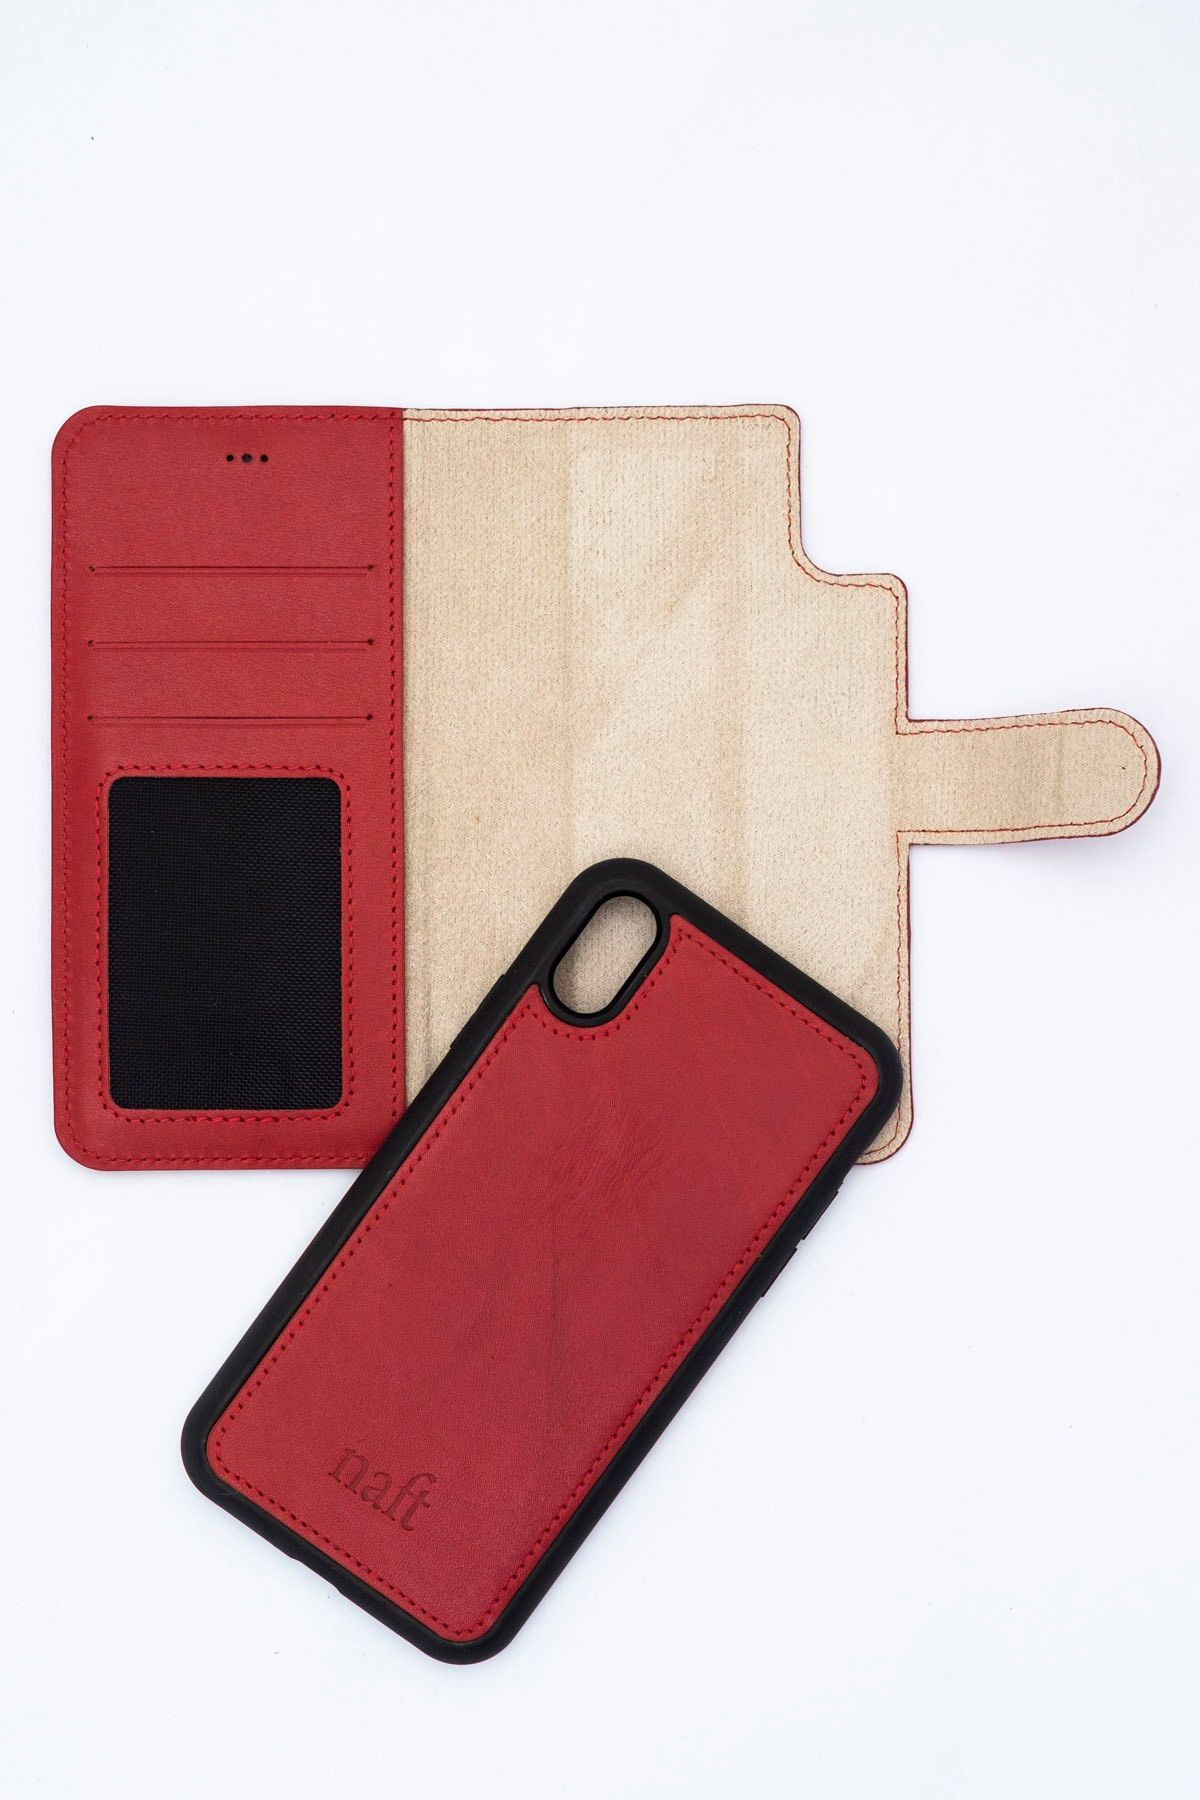 naft Mıknatıslı Telefon Cüzdanı - Iphone Xs Max - Gerçek Deri - Veji Kırmızı